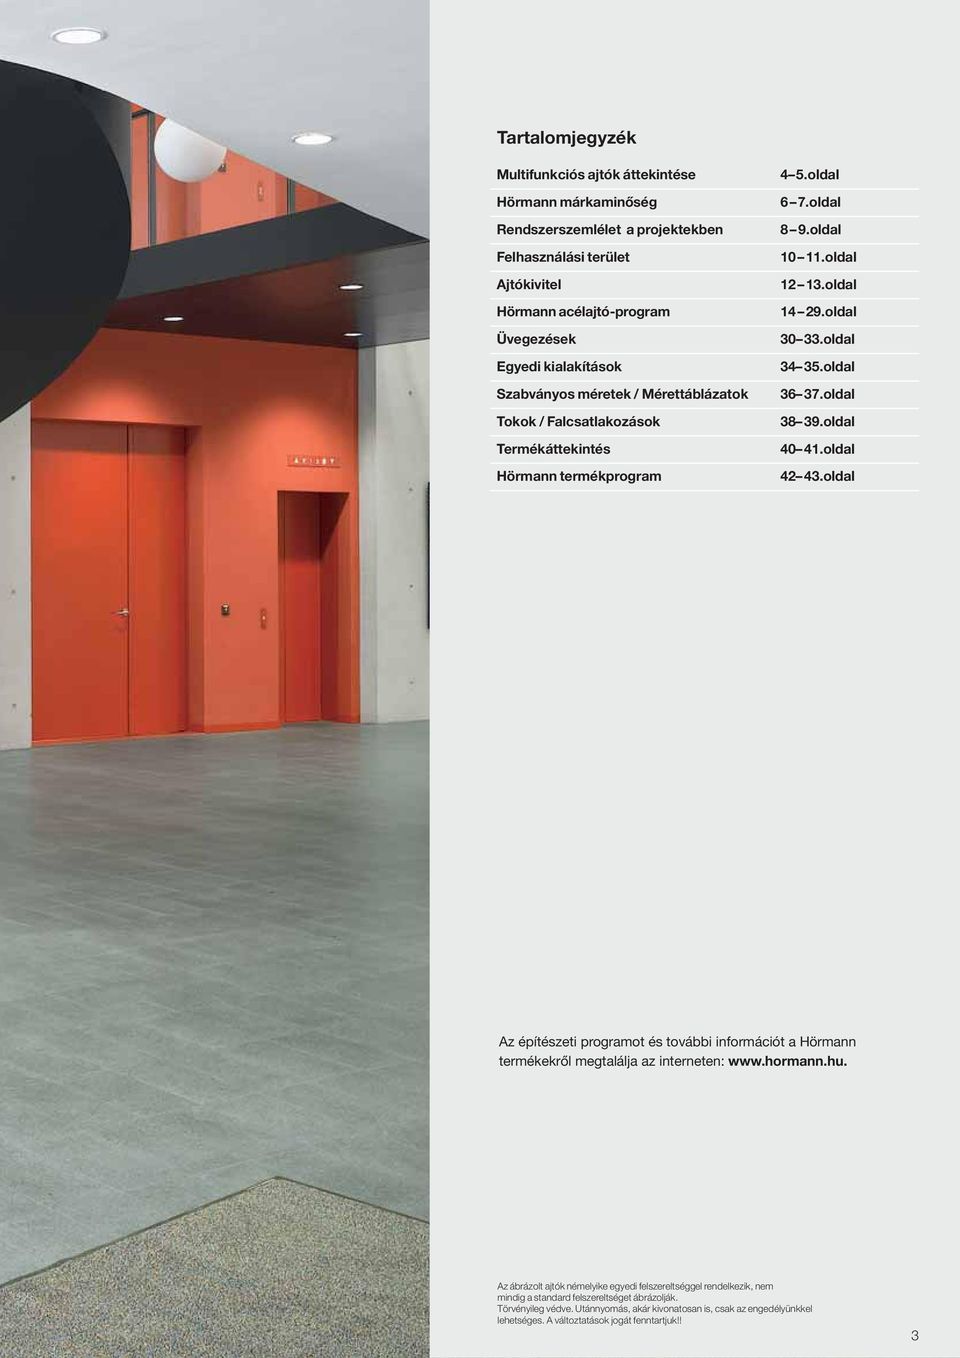 oldal 36 37.oldal 38 39.oldal 40 41.oldal 42 43.oldal Az építészeti programot és további információt a Hörmann termékekről megtalálja az interneten: www.hormann.hu.